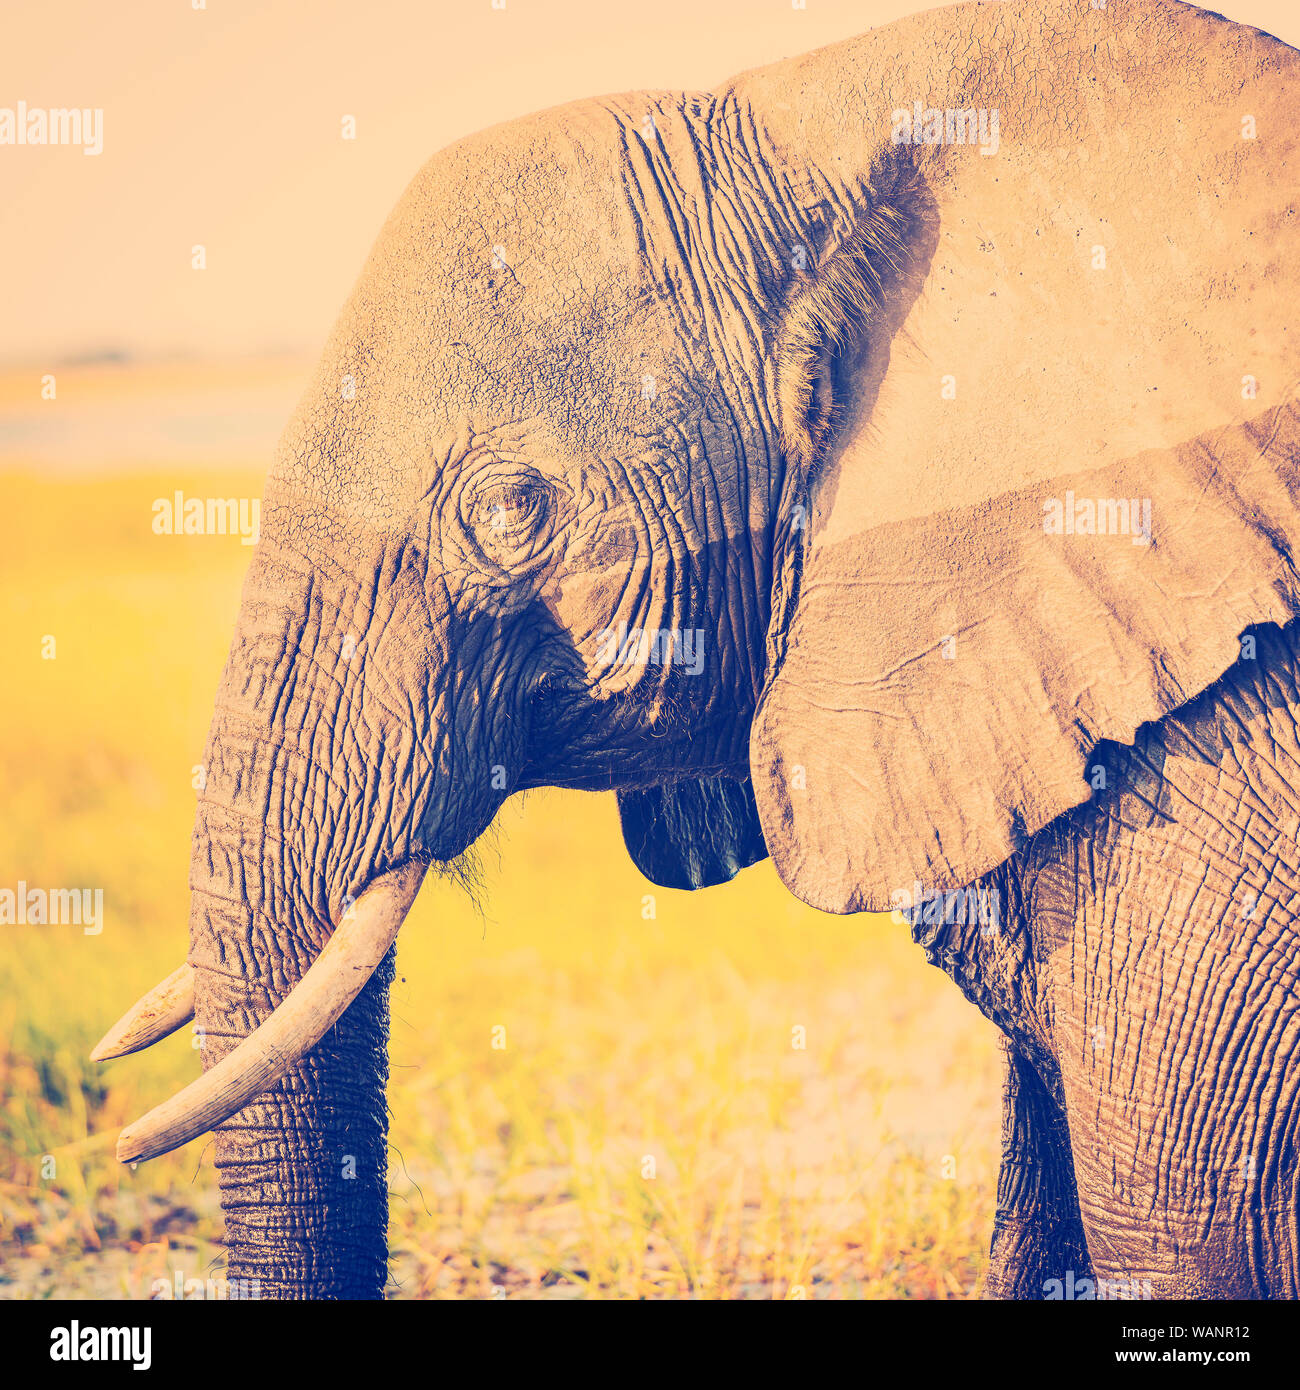 L'éléphant au parc national de Chobe, au Botswana, l'Afrique avec retro style effet filtre Instagram Banque D'Images